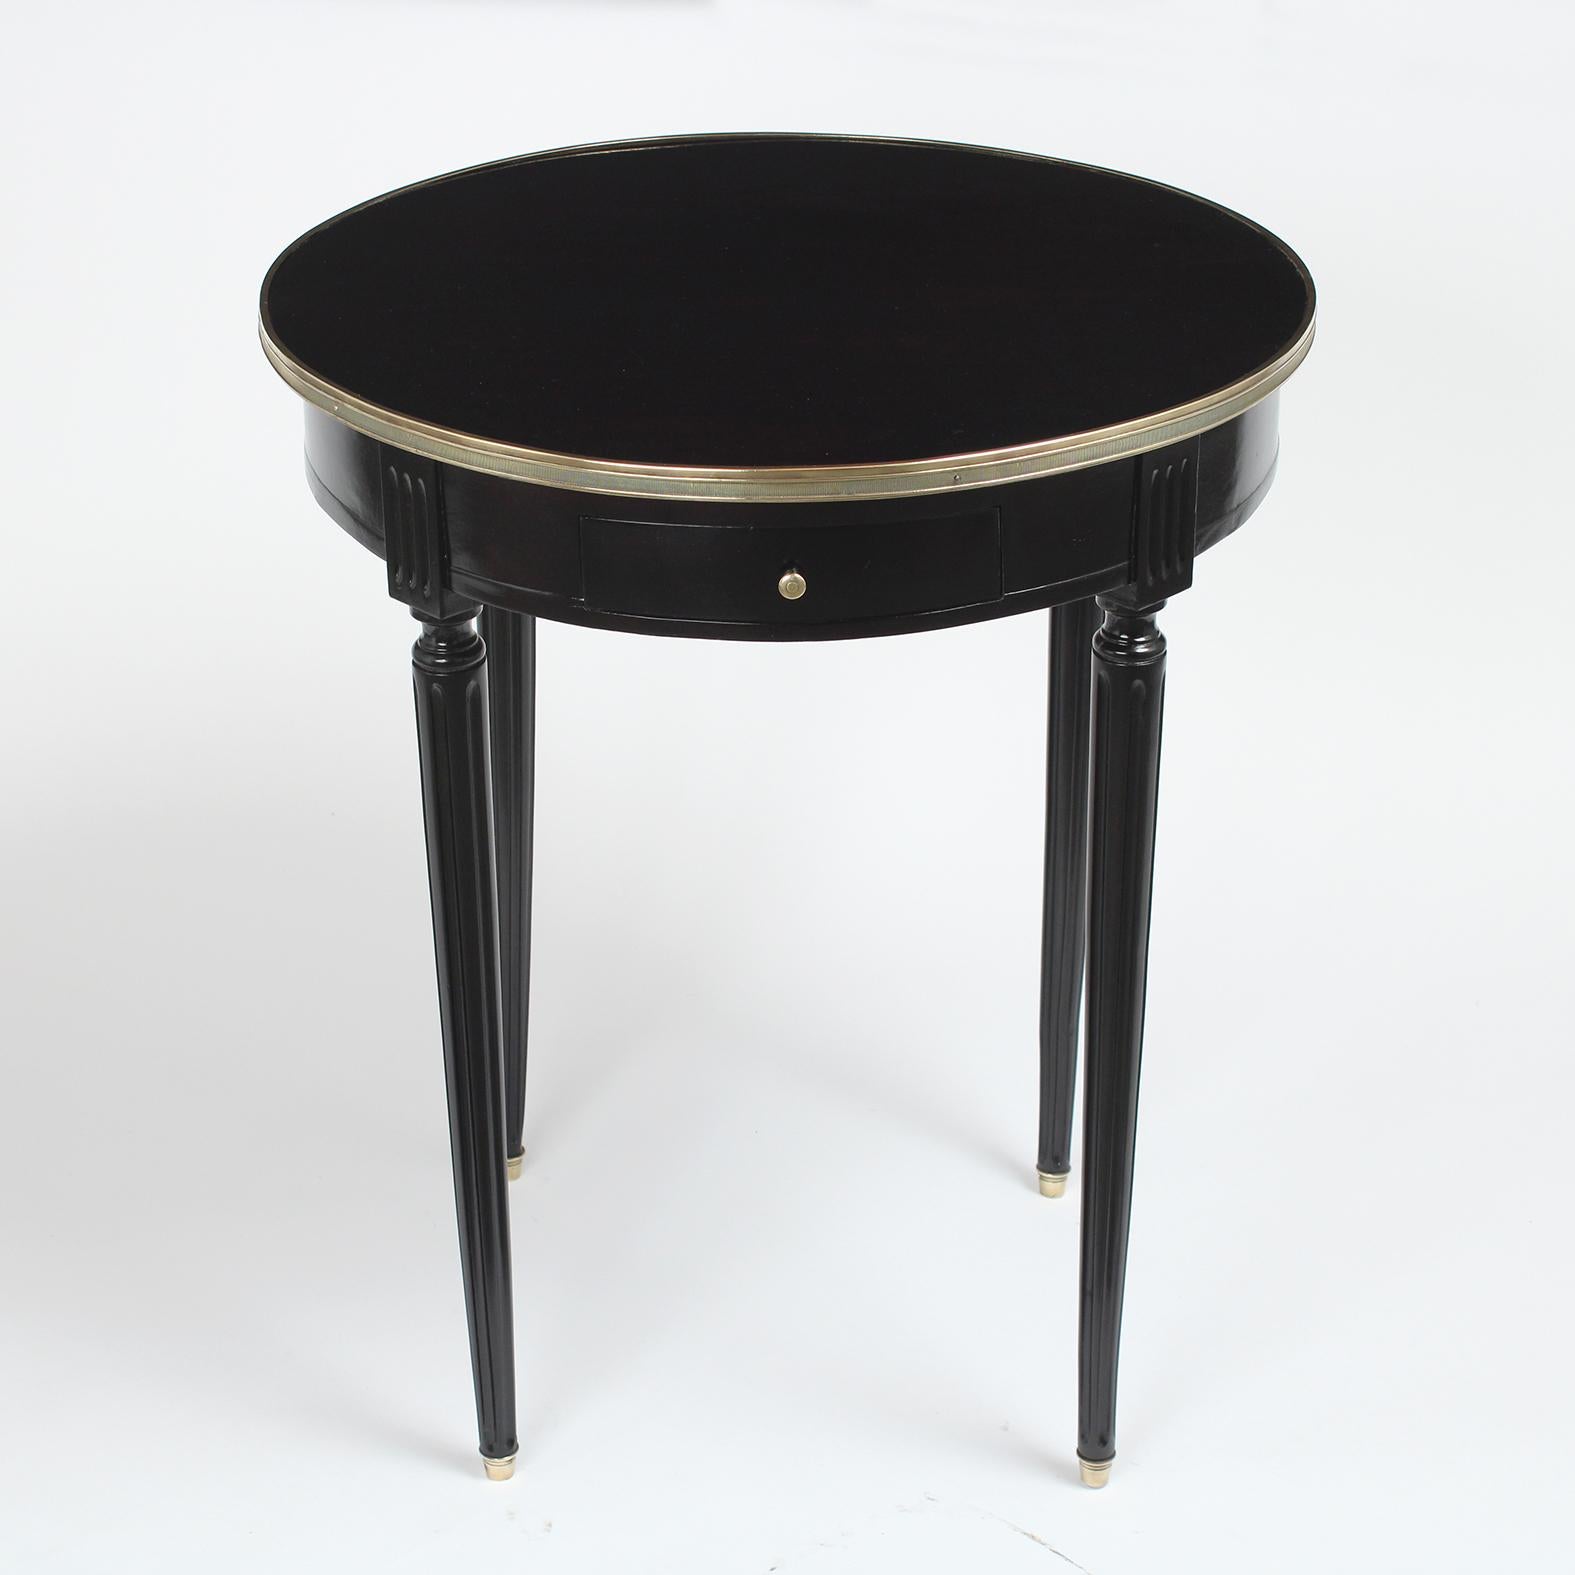 Antique Louis XVI Style Round Ebonized Side Table (Louis XVI.)